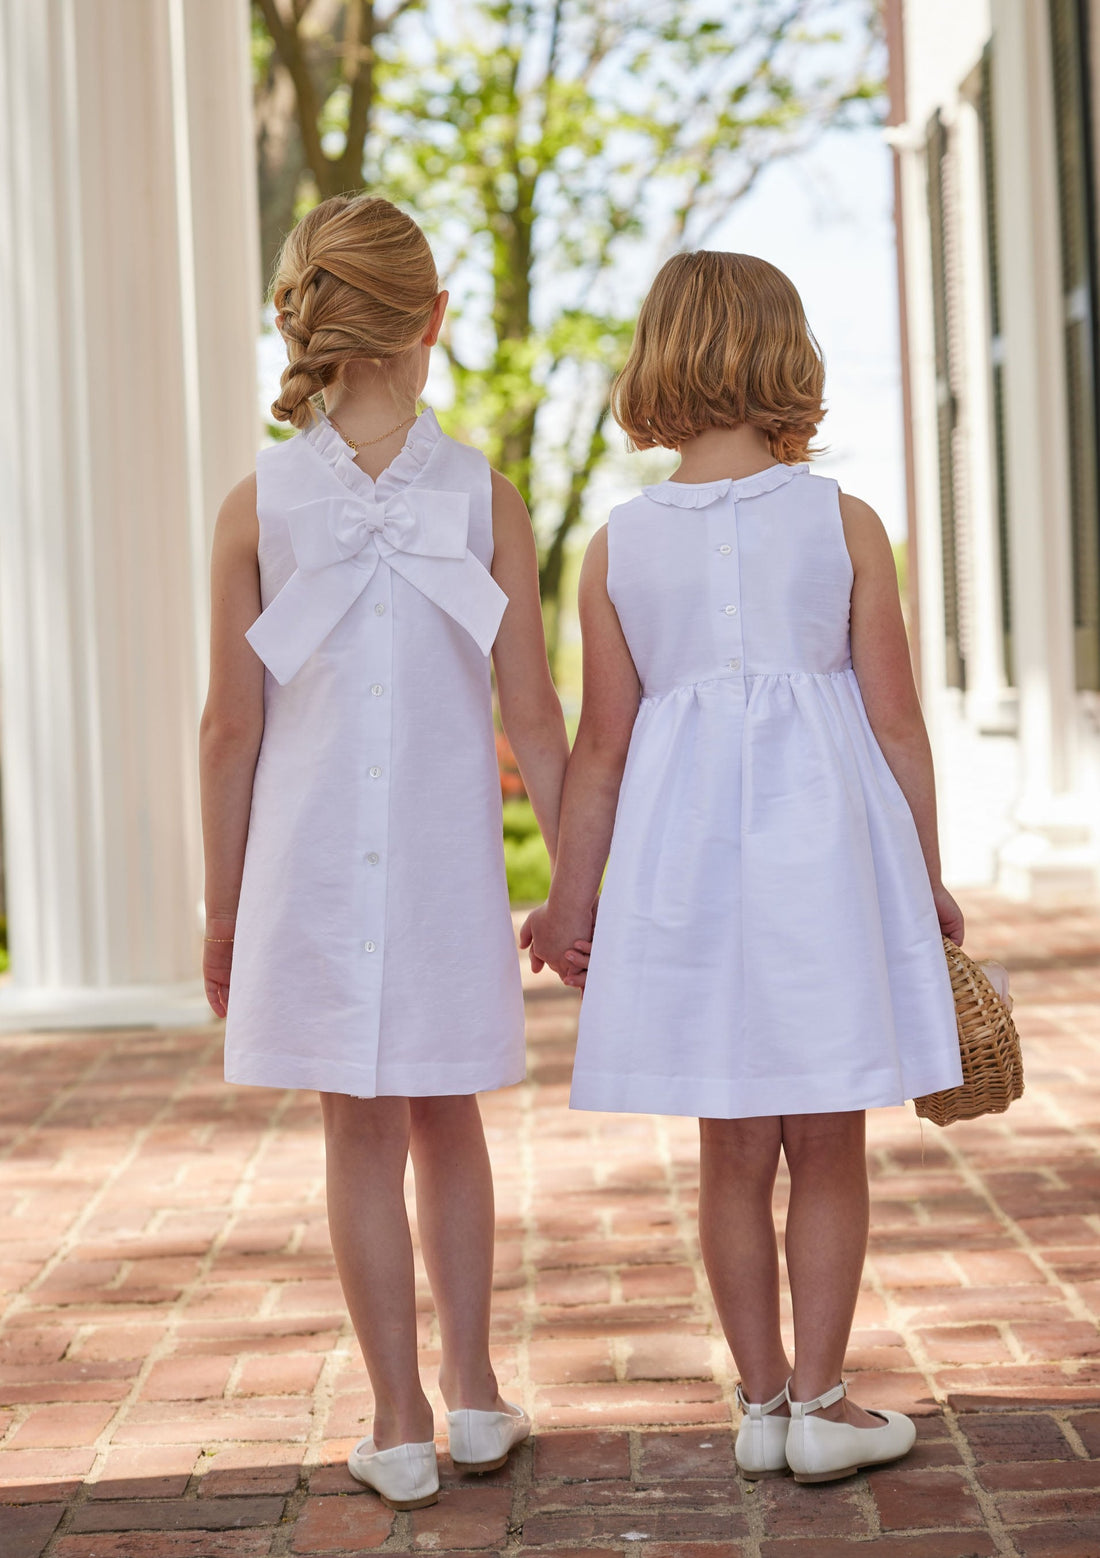 Childrens Girls Formal Elegant Floor-Length White Ball Gown Dress MG B1 6-7  YEAR | eBay